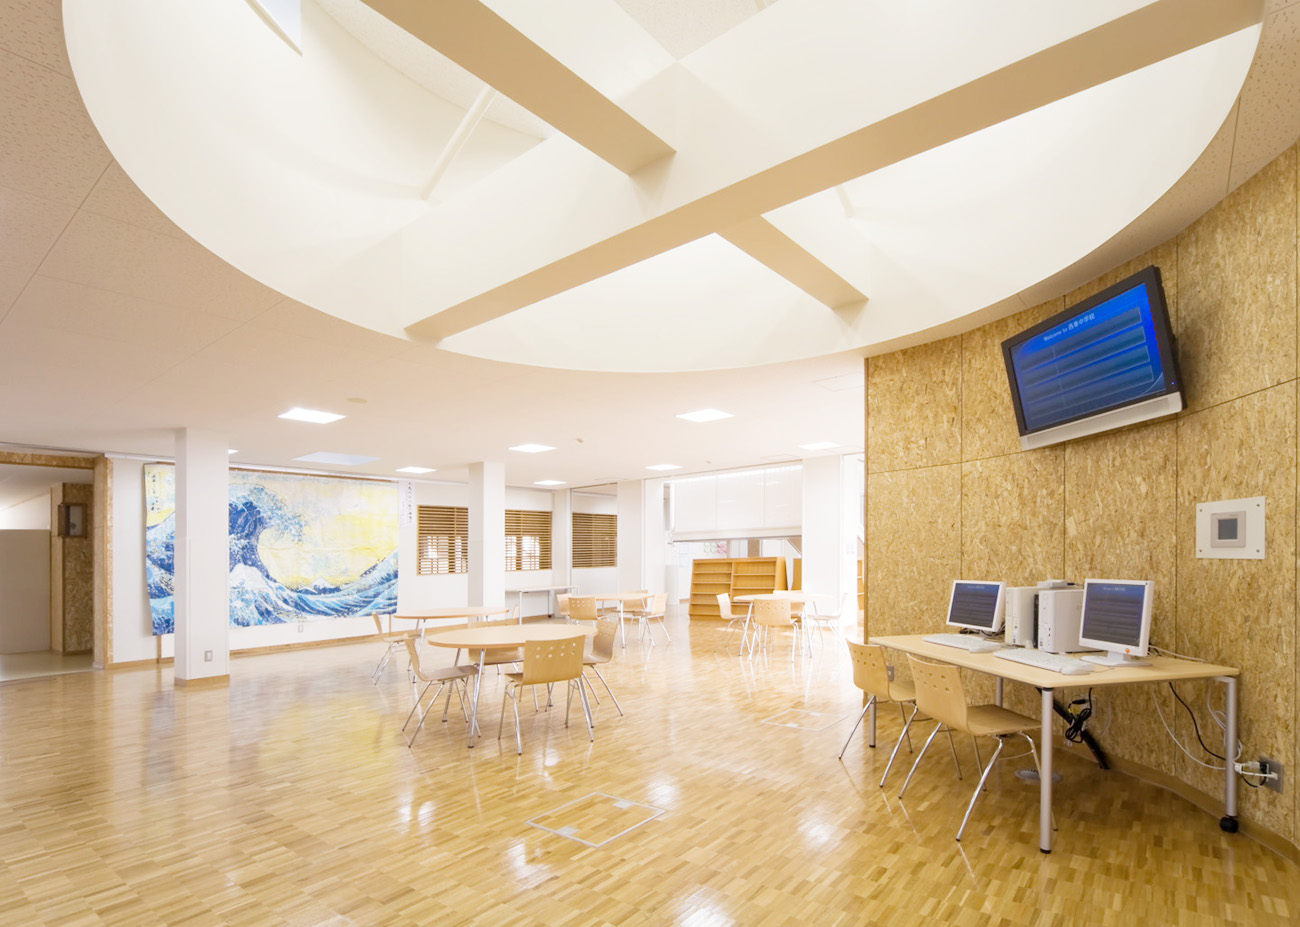 メディアセンターの写真。天井は吹き抜けになっており、明るい雰囲気で、椅子やテーブル、PCが設置されている。